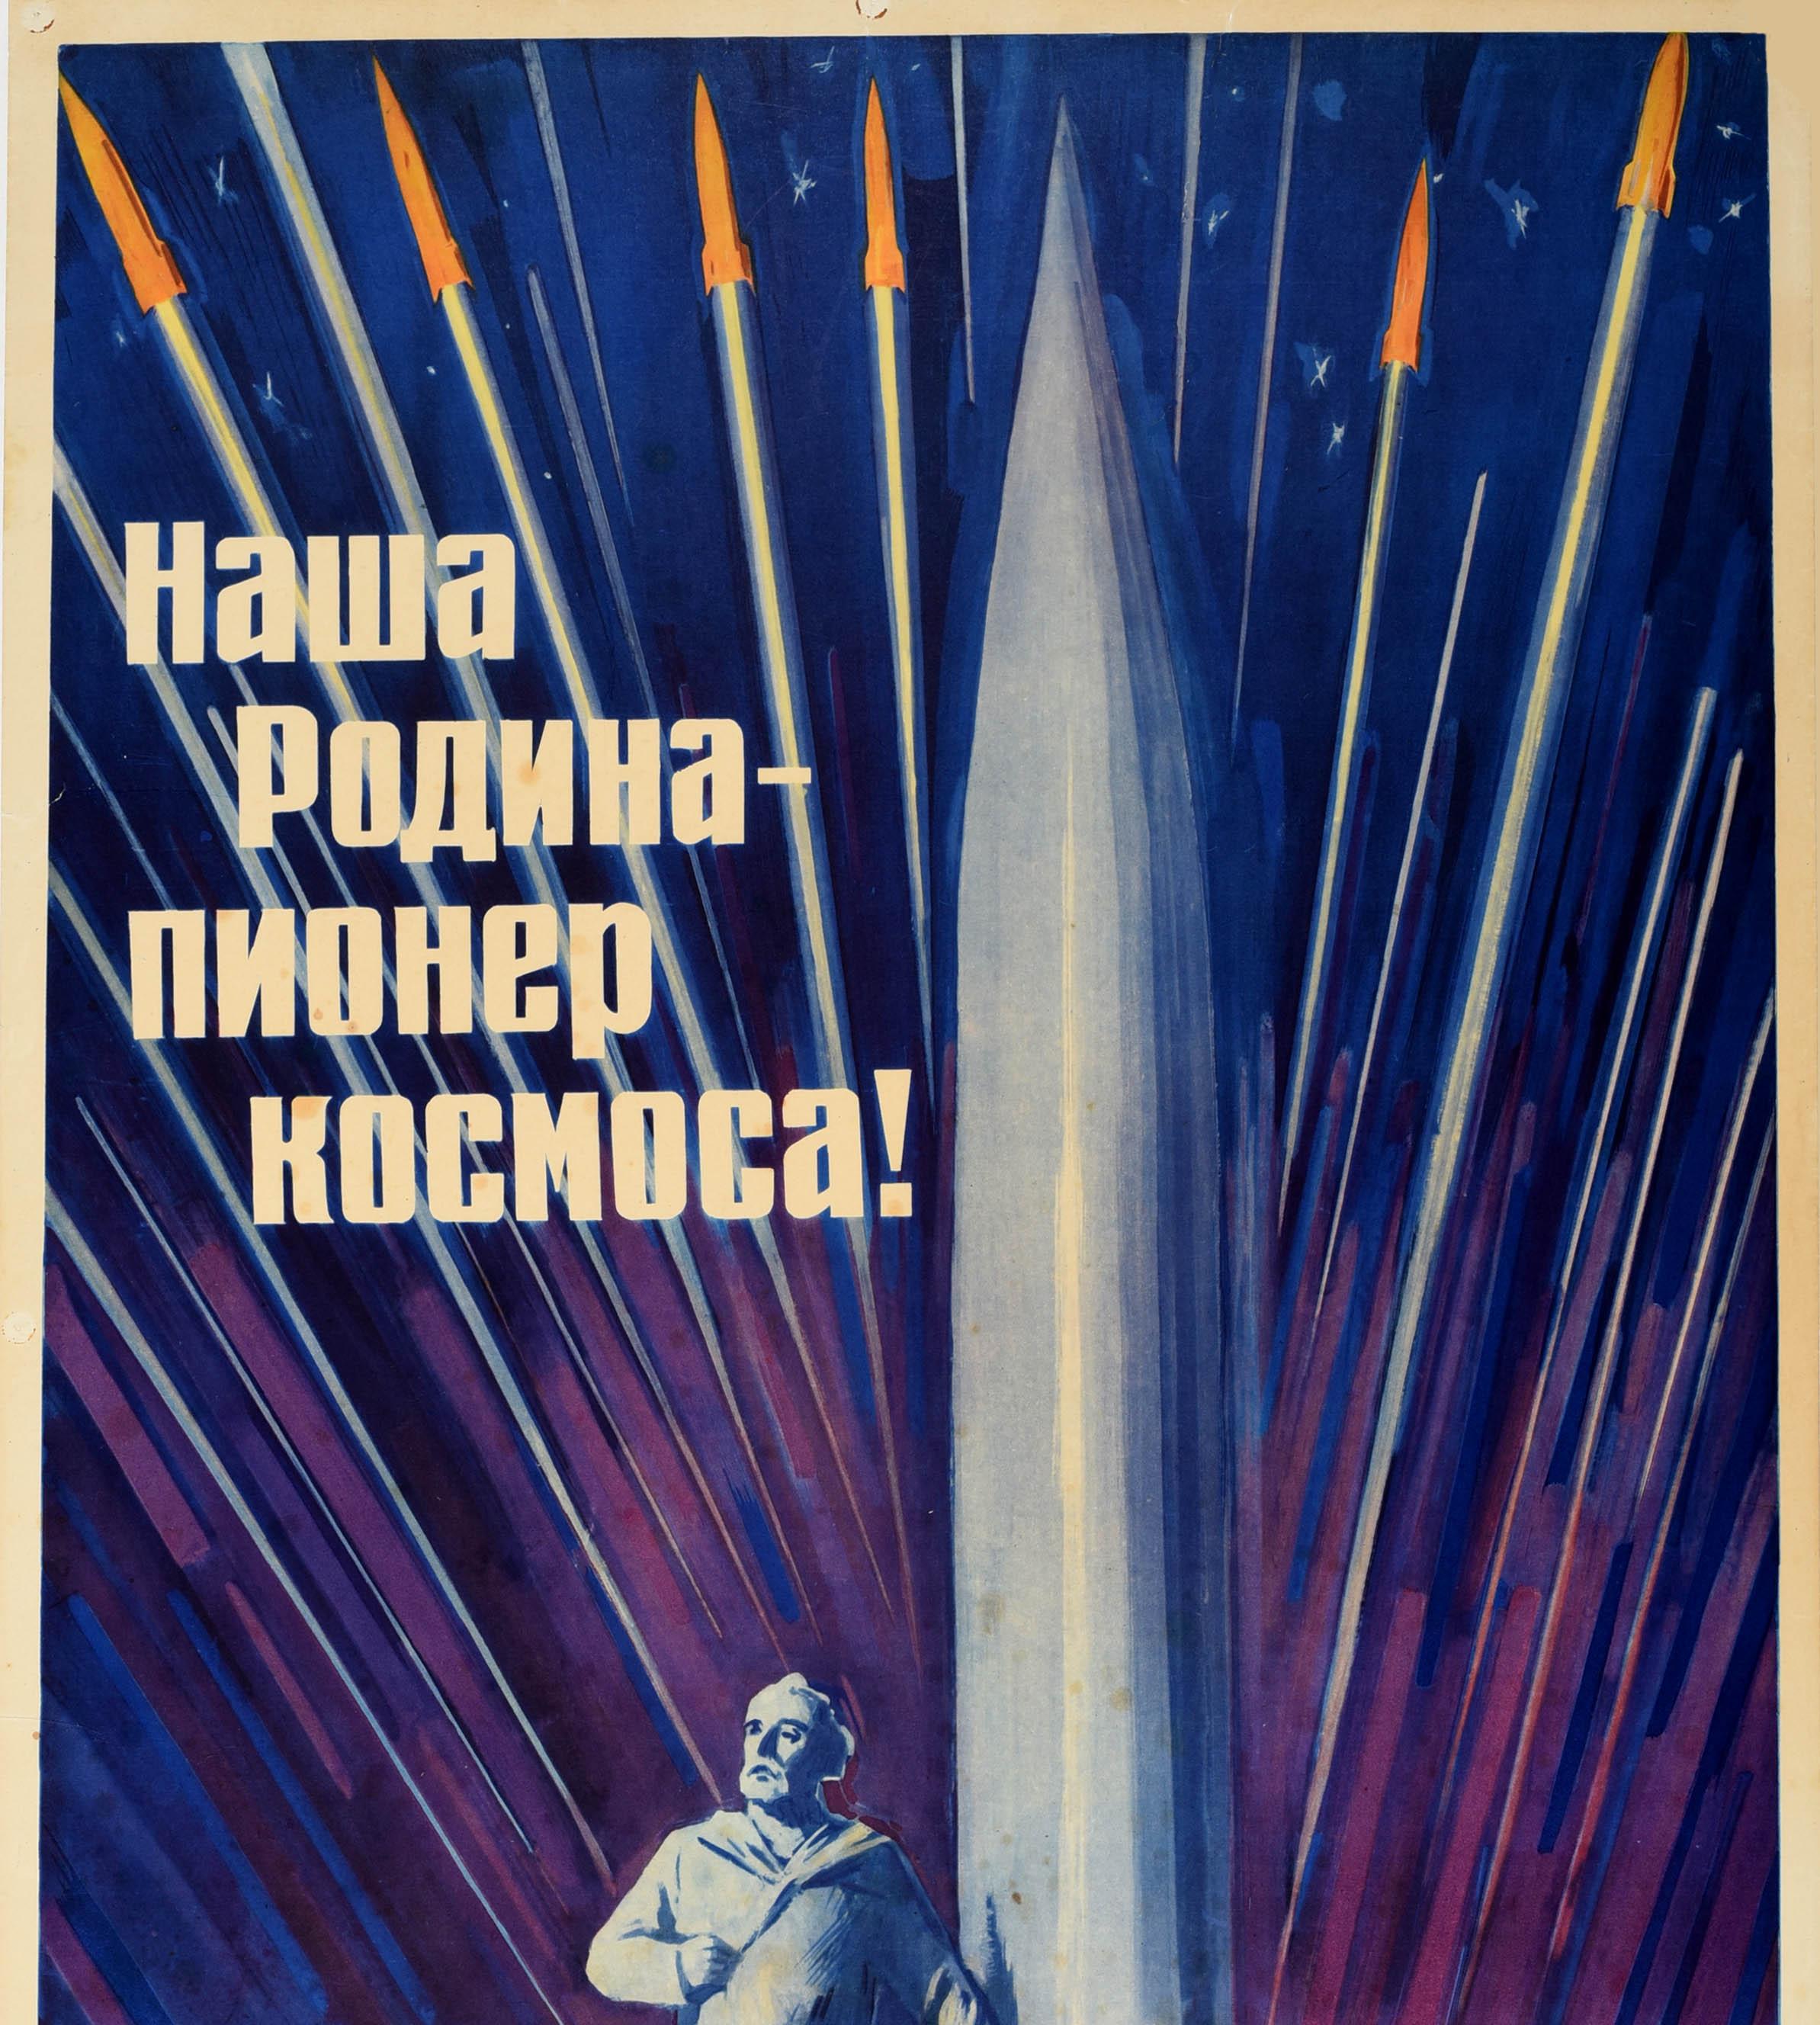 cosmonaut propaganda